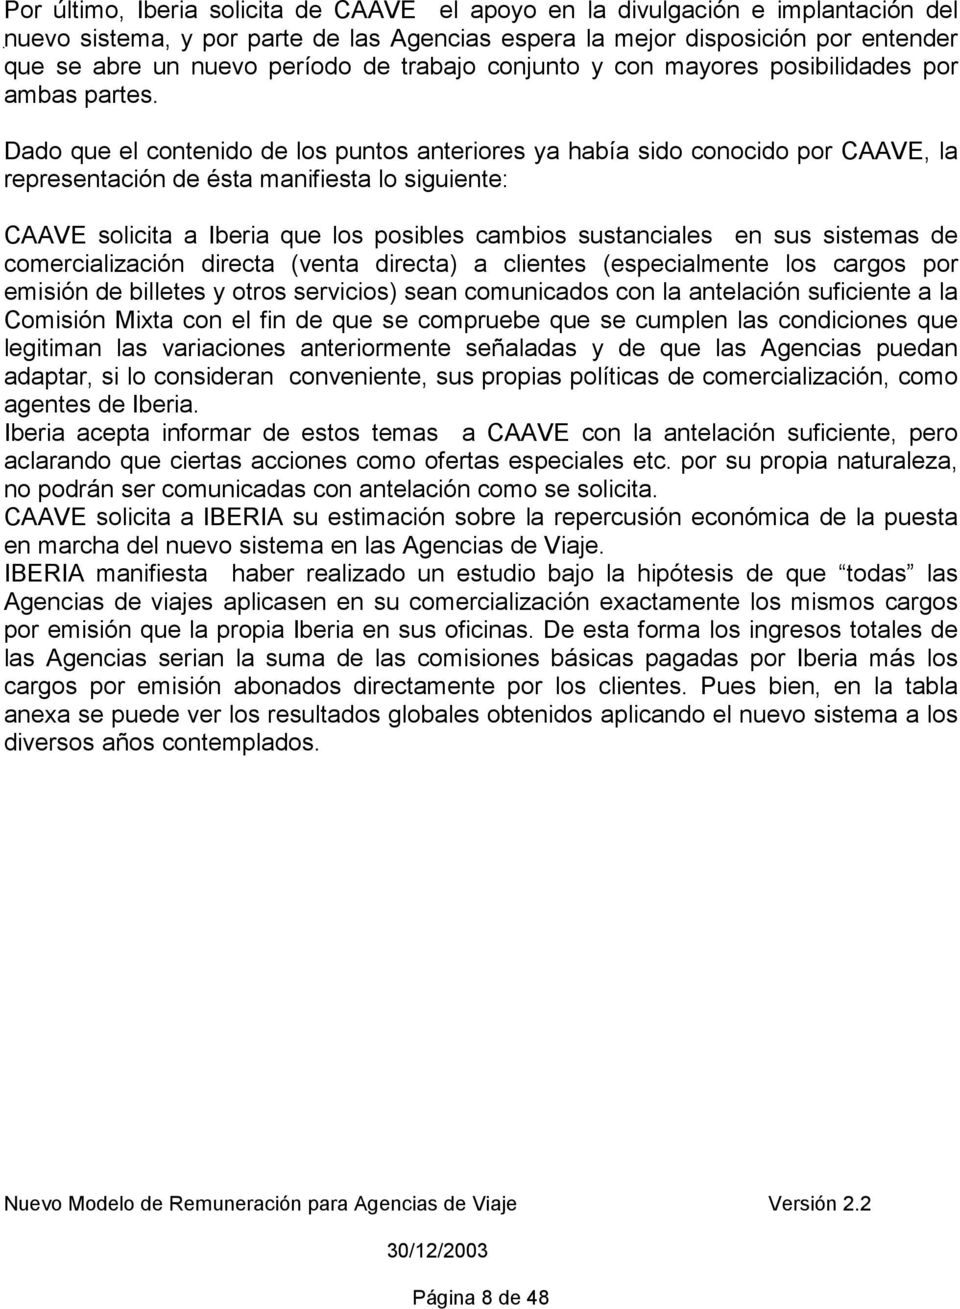 Dado que el contenido de los puntos anteriores ya había sido conocido por CAAVE, la representación de ésta manifiesta lo siguiente: CAAVE solicita a Iberia que los posibles cambios sustanciales en